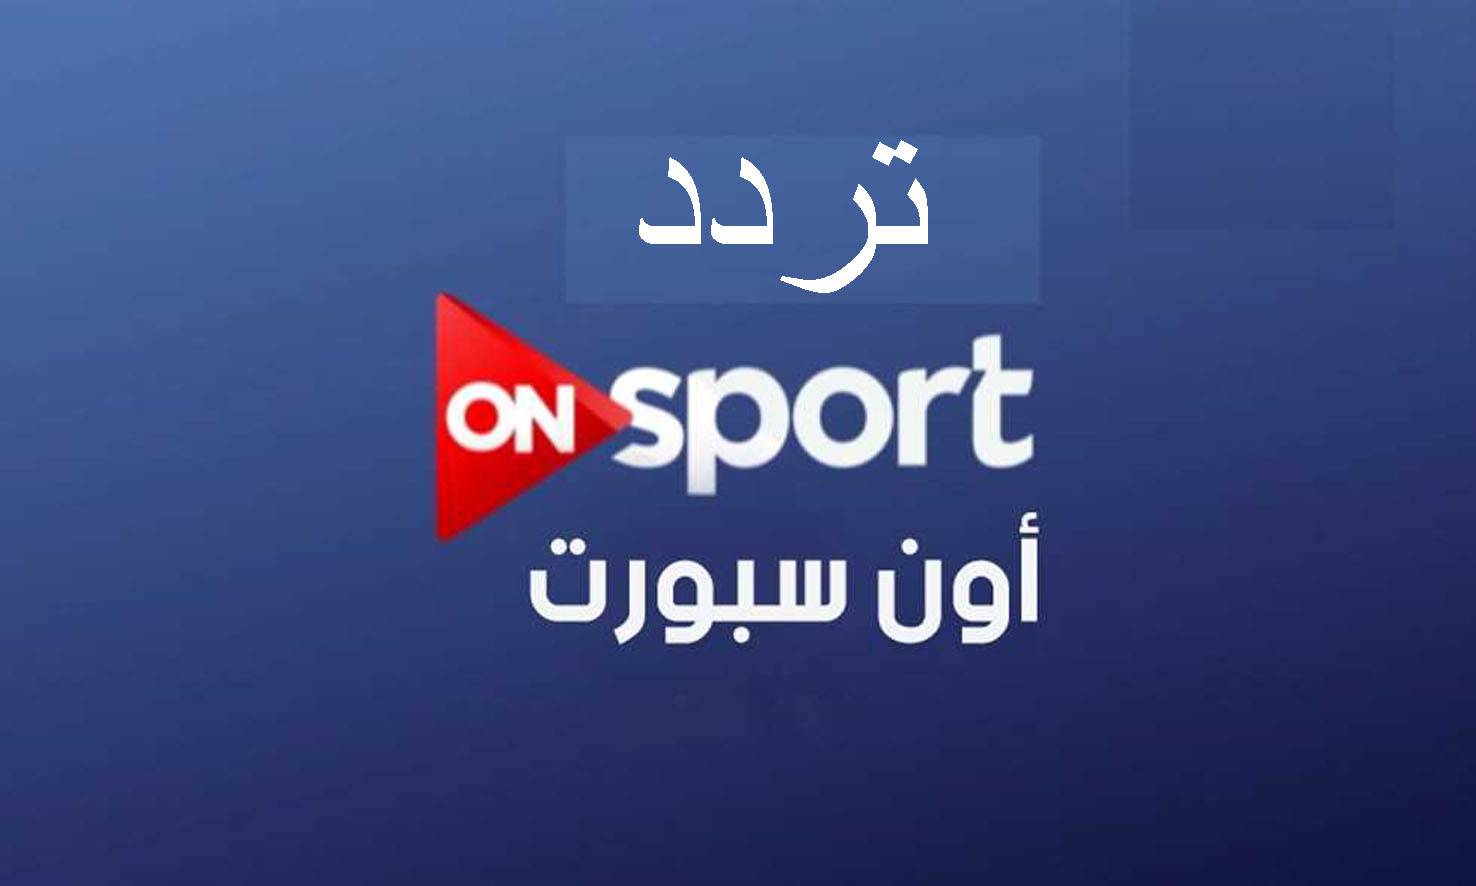 احصل اليوم على تردد قناة أون سبورت on sport الرياضية أغسطس 2019